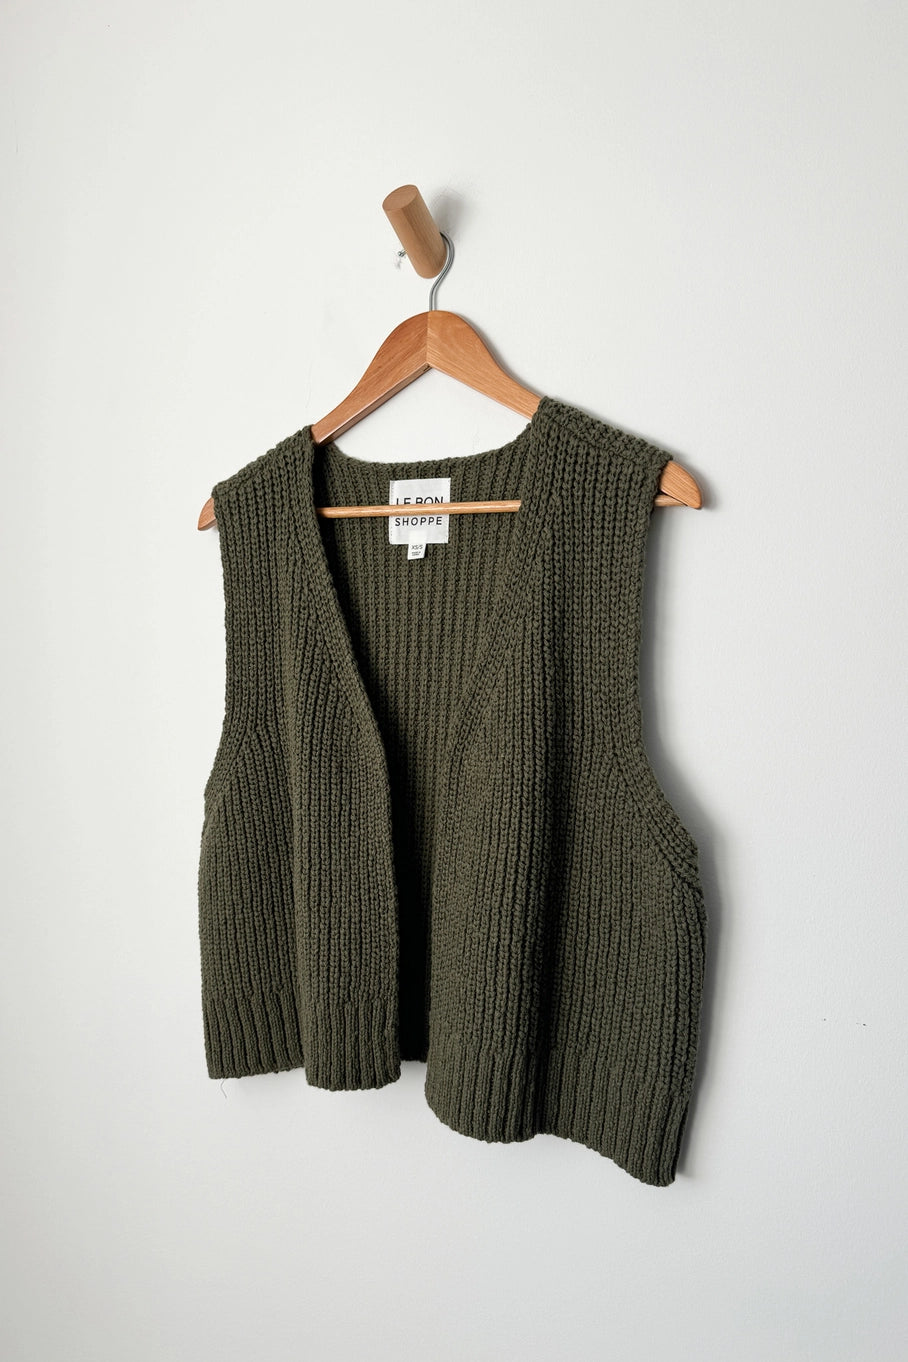 granny cotton sweater vest